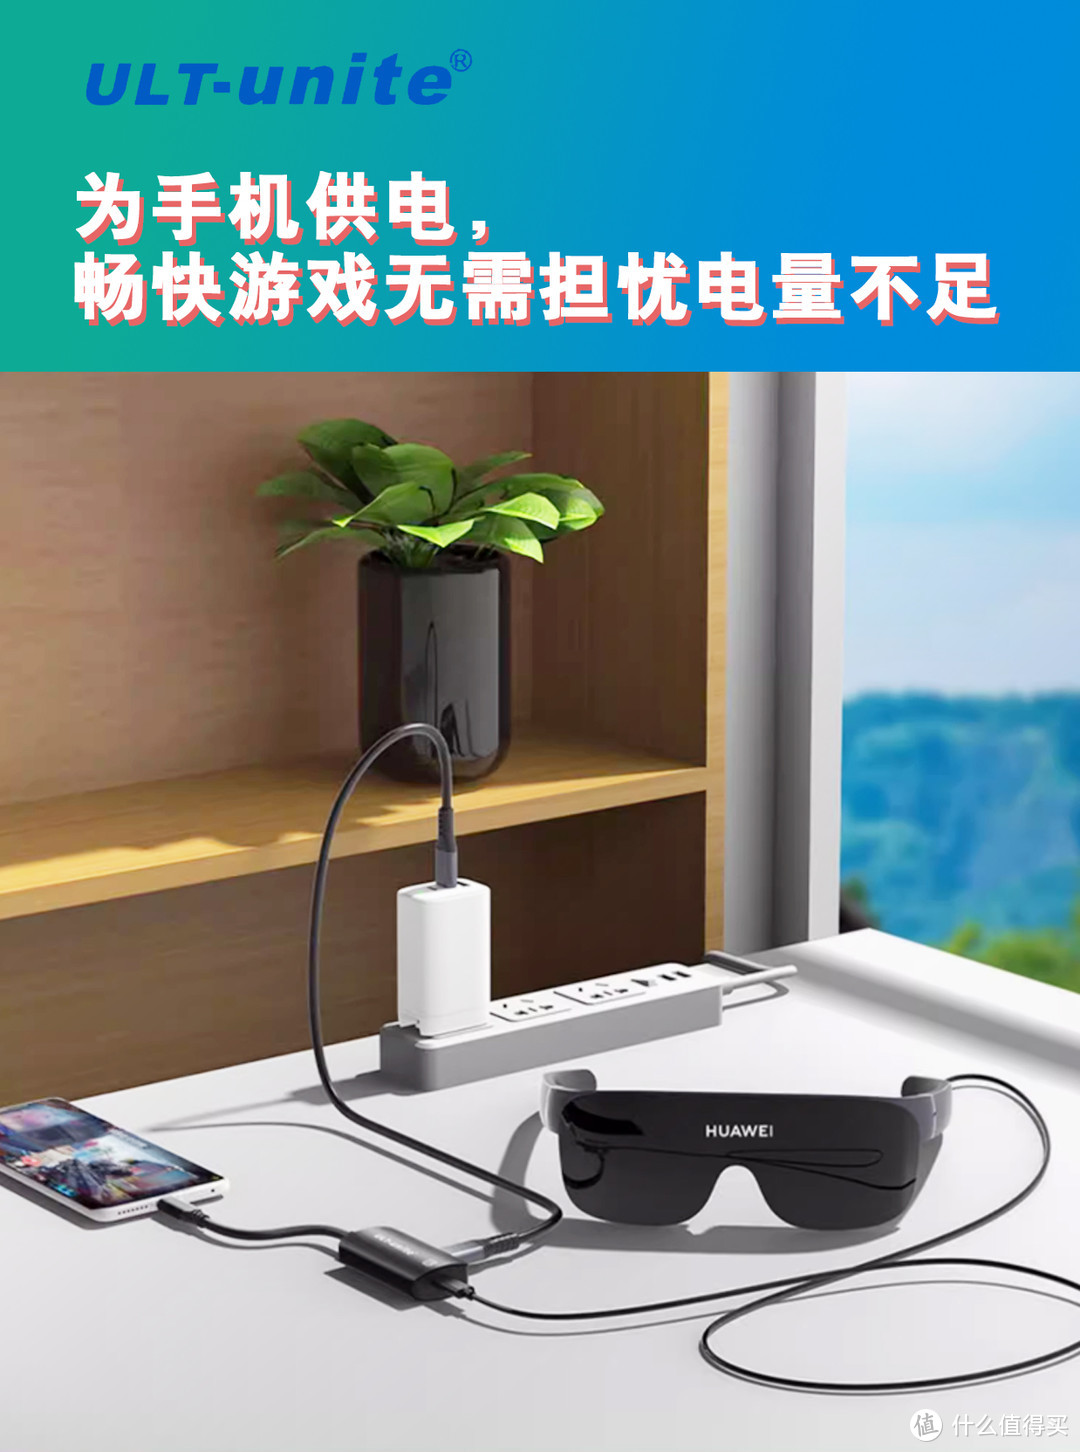 ULT-unite AR智能眼镜充电供电转换器，解决华为智能眼镜充电供电的问题